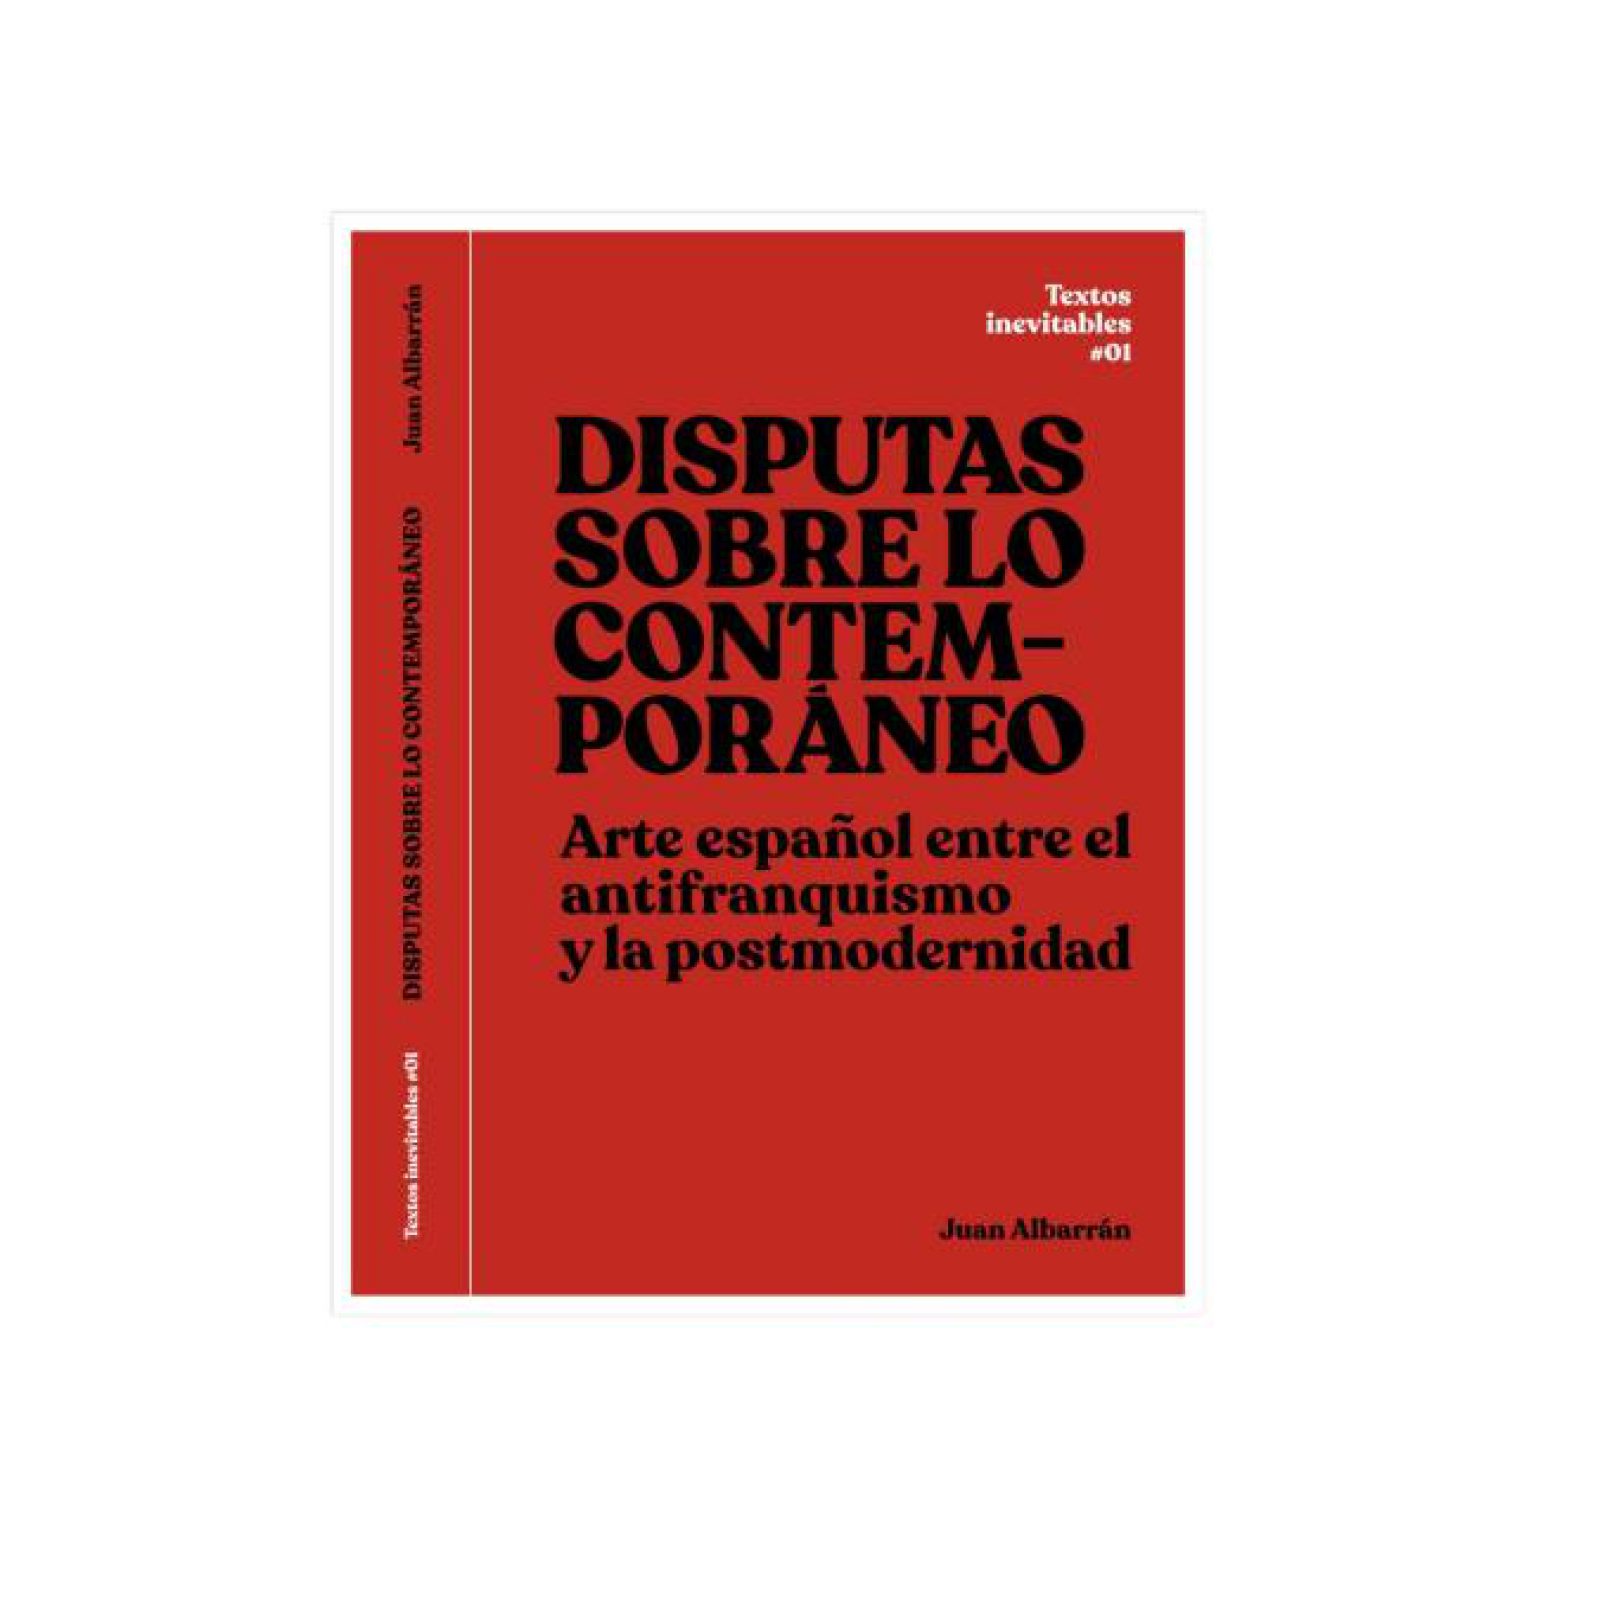 Juan Albarrán, Disputas sobre lo contemporáneo. Arte español entre el antifranquismo y la postmodernidad, Producciones de Arte y Pensamiento (PROAP) y Museology, Madrid, 2019, 230 páginas